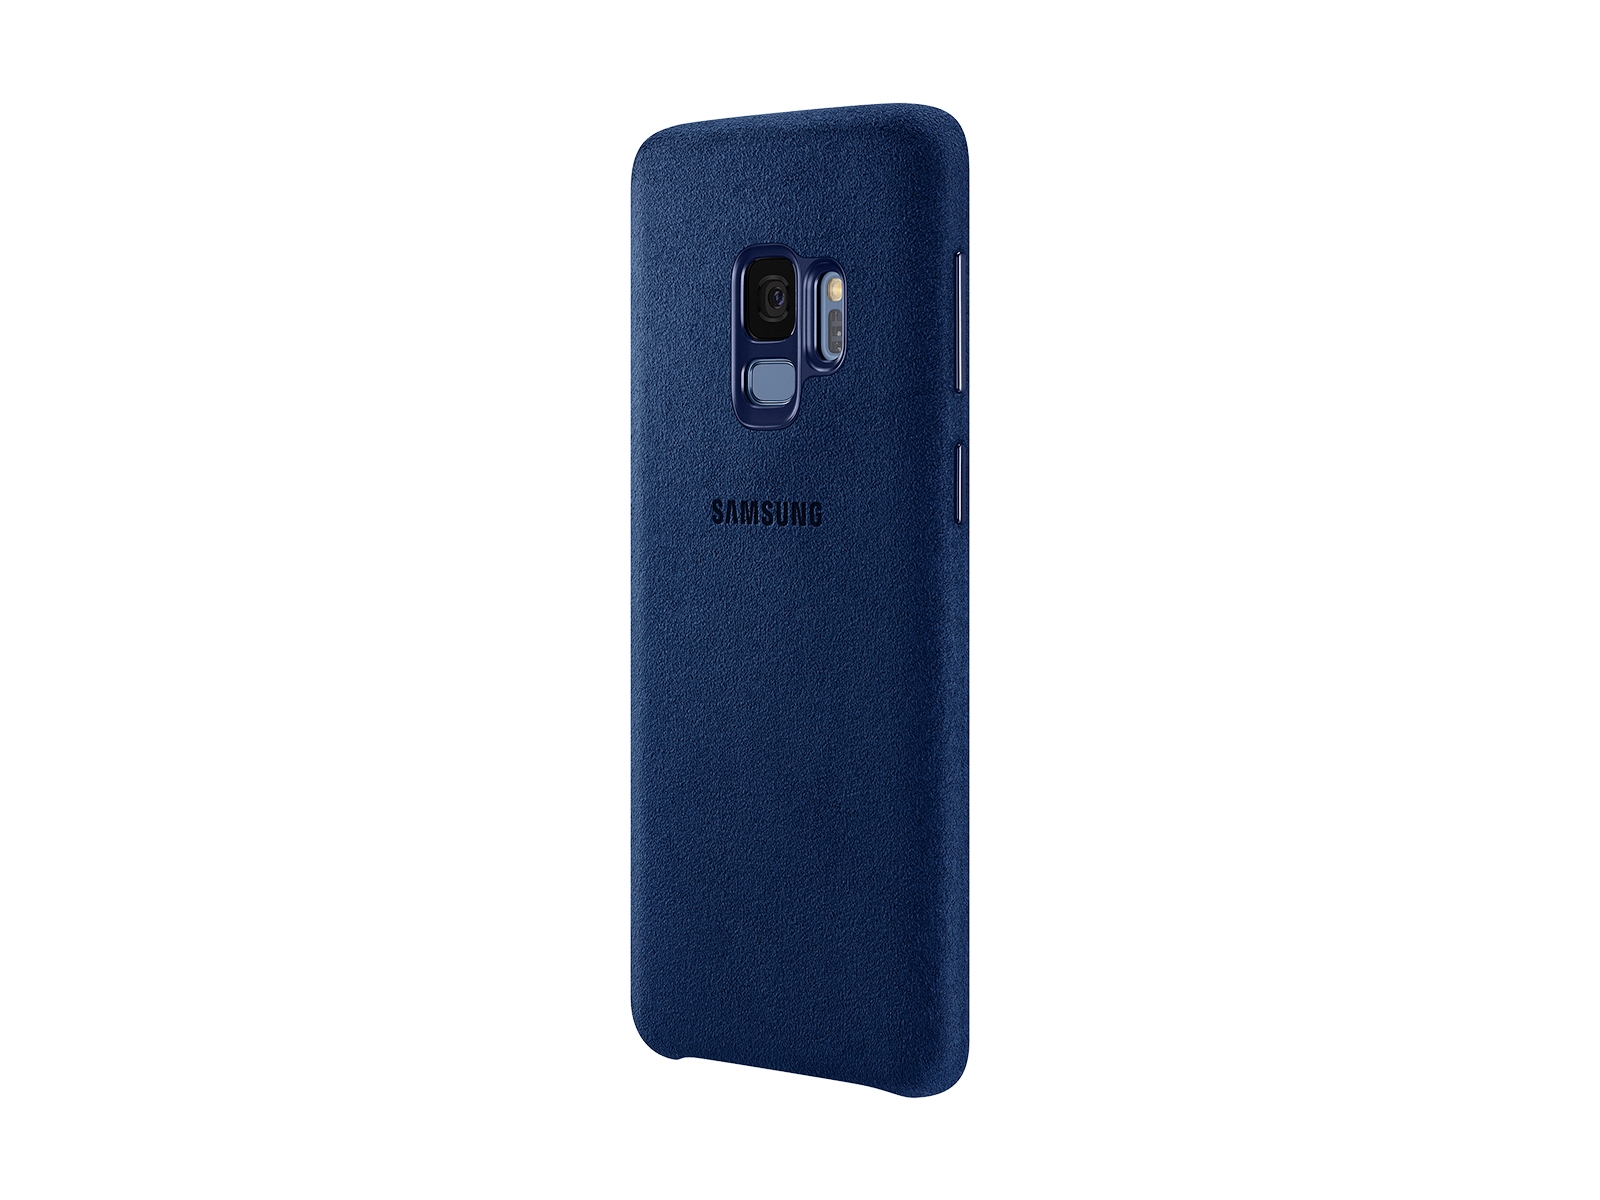 Thumbnail image of Galaxy S9 Alcantara Cover, Blue